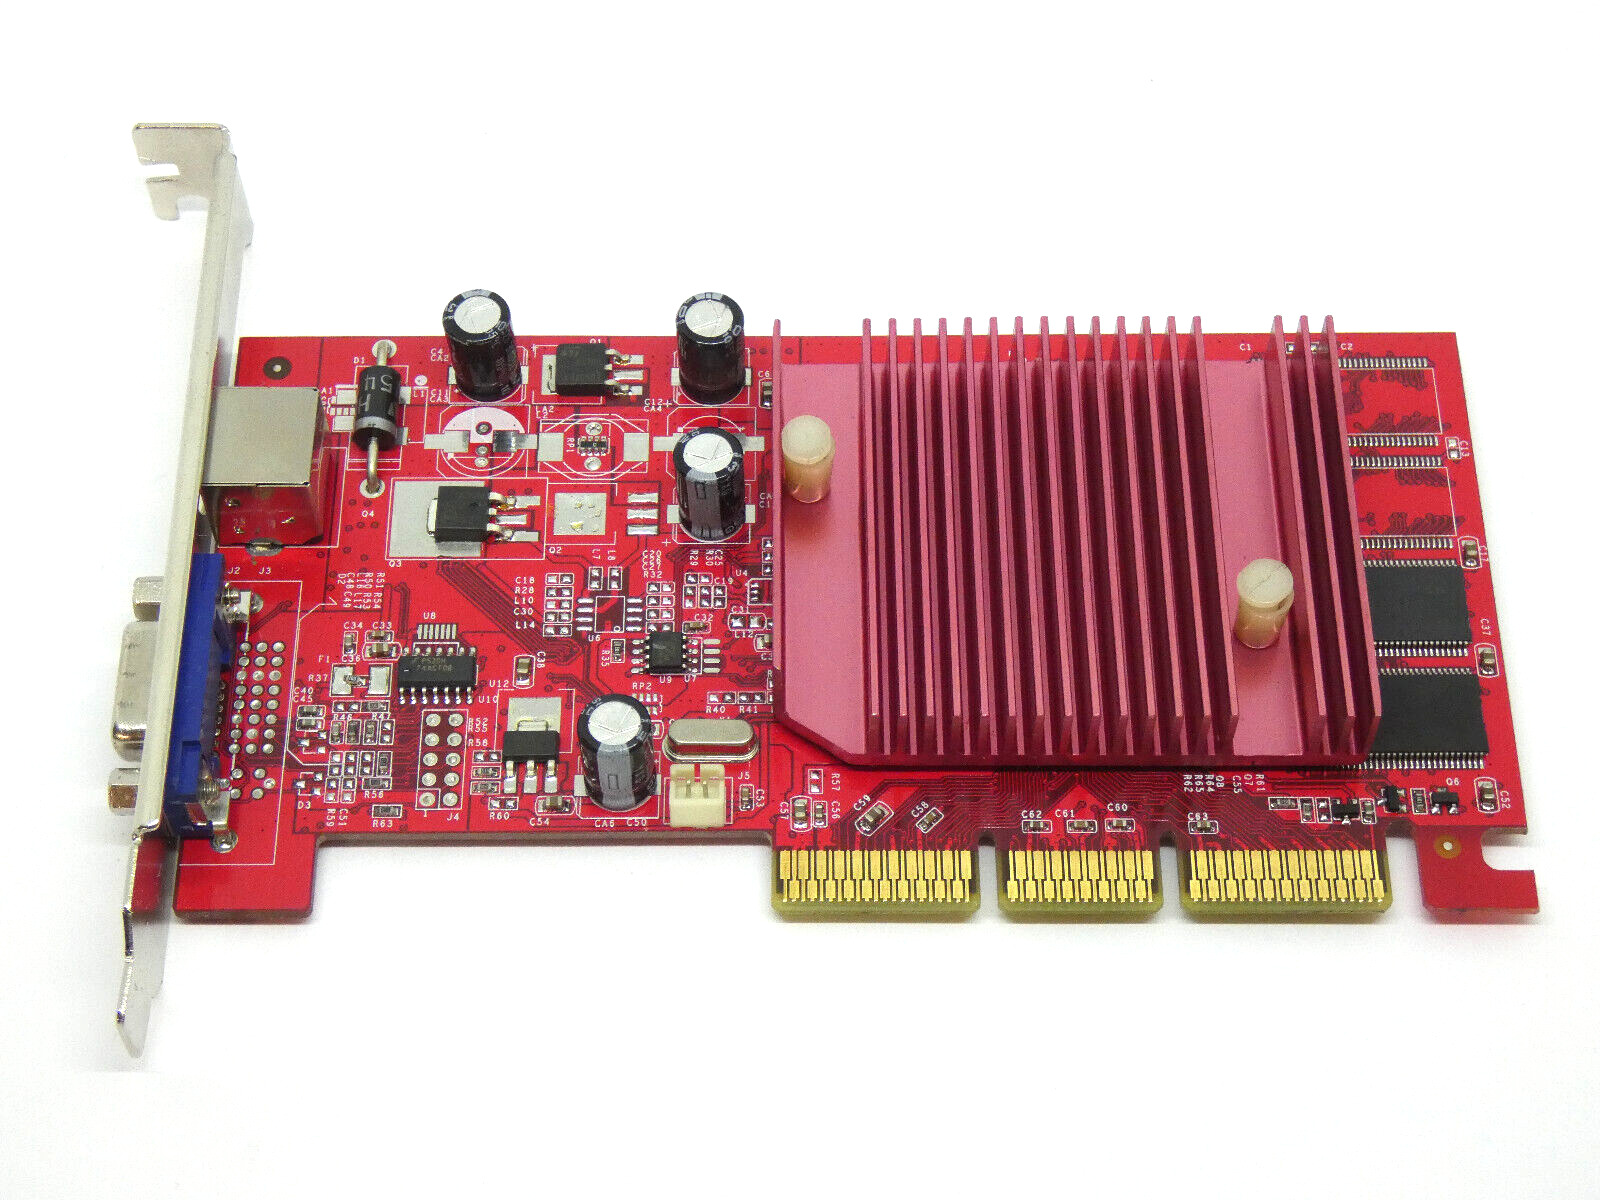 GAINWARD GeForce4 MX4000 PowerPack PRO/620  64MB AGP 8X VGA Card - AGP Slot